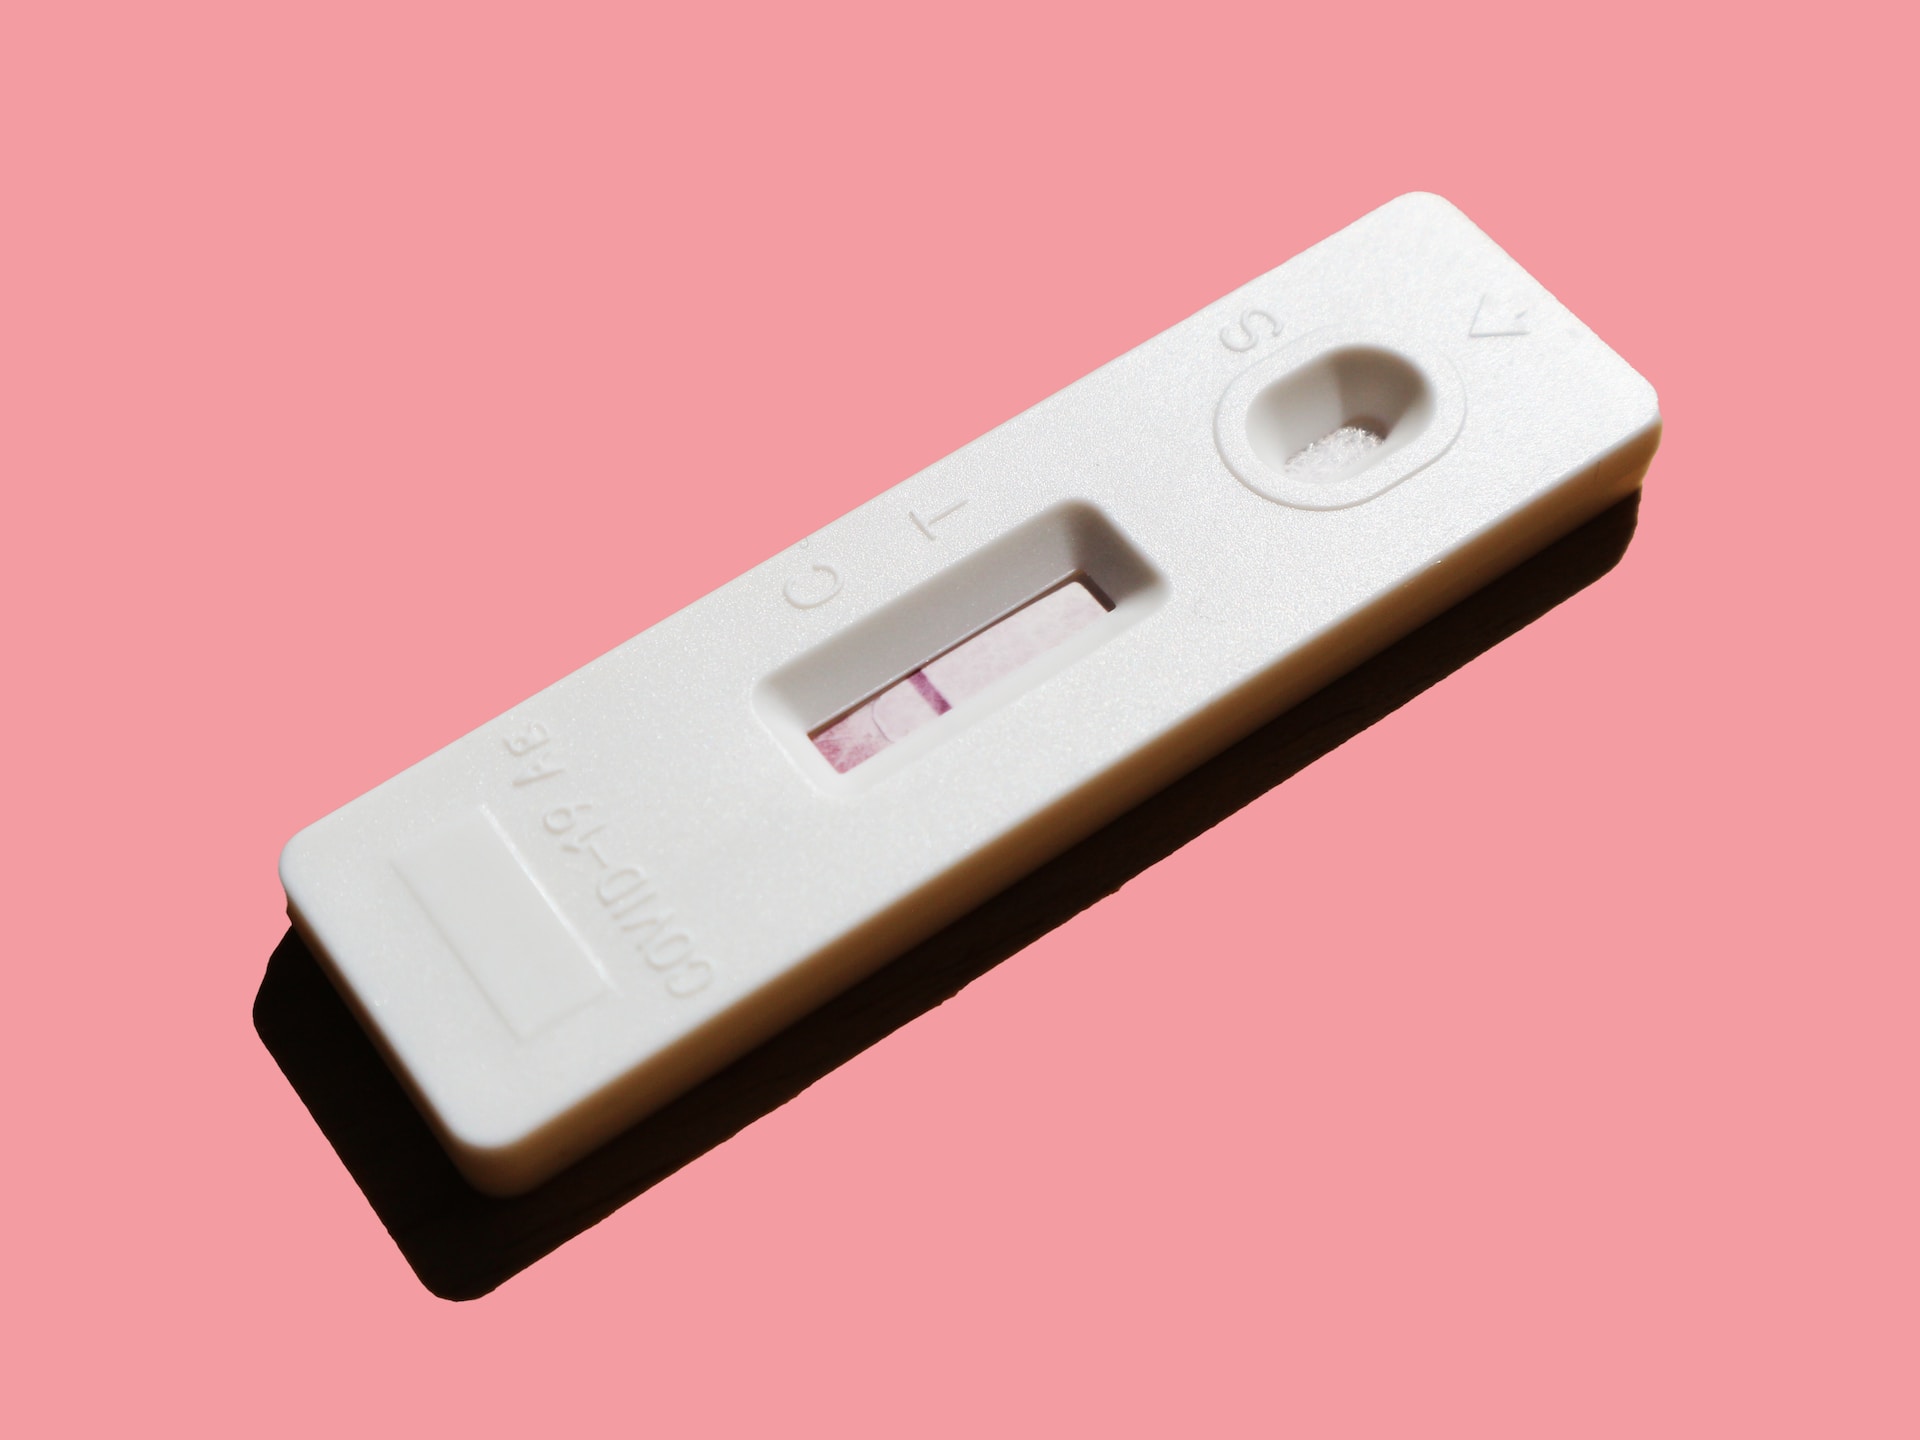 Dopo quanto tempo si può fare il test di gravidanza?